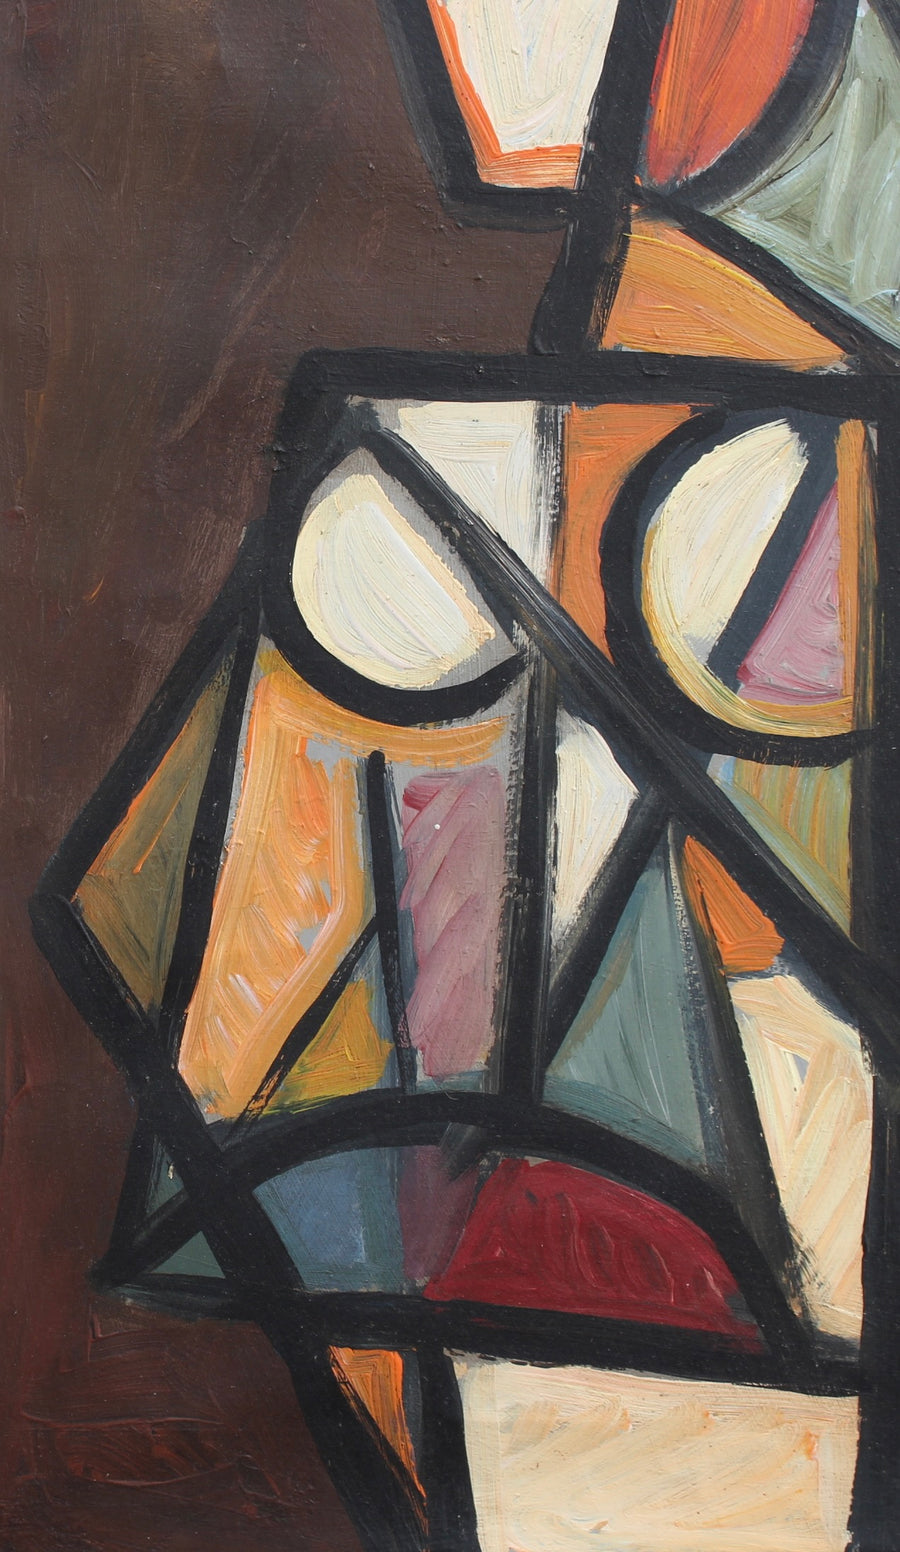 'Portrait of a Cubist Woman' by STM (circa 1970s)